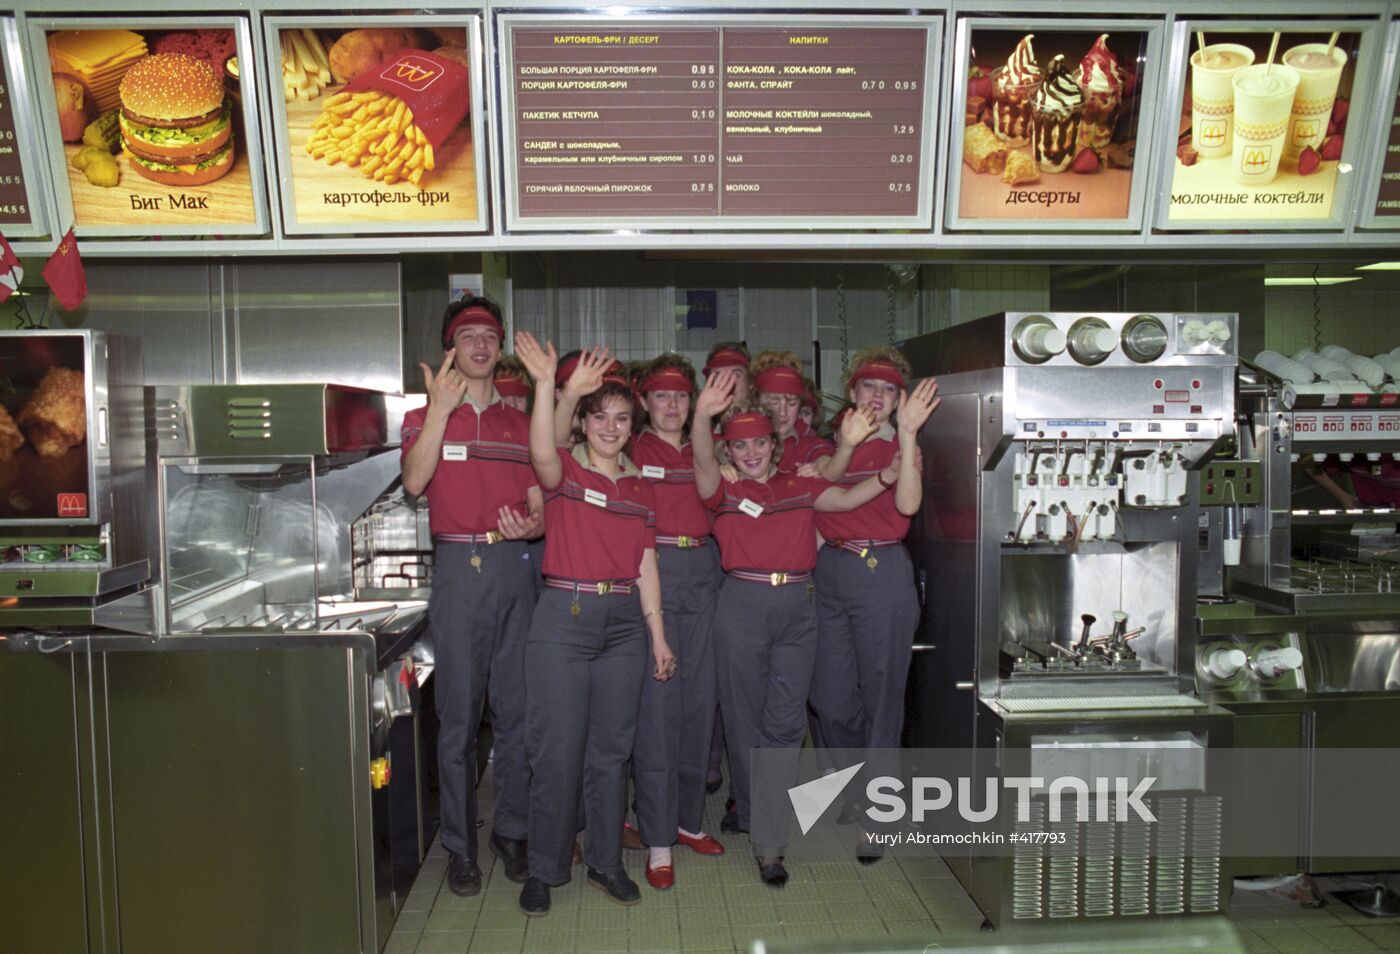 McDonald's Soviet-Canadian restaurant